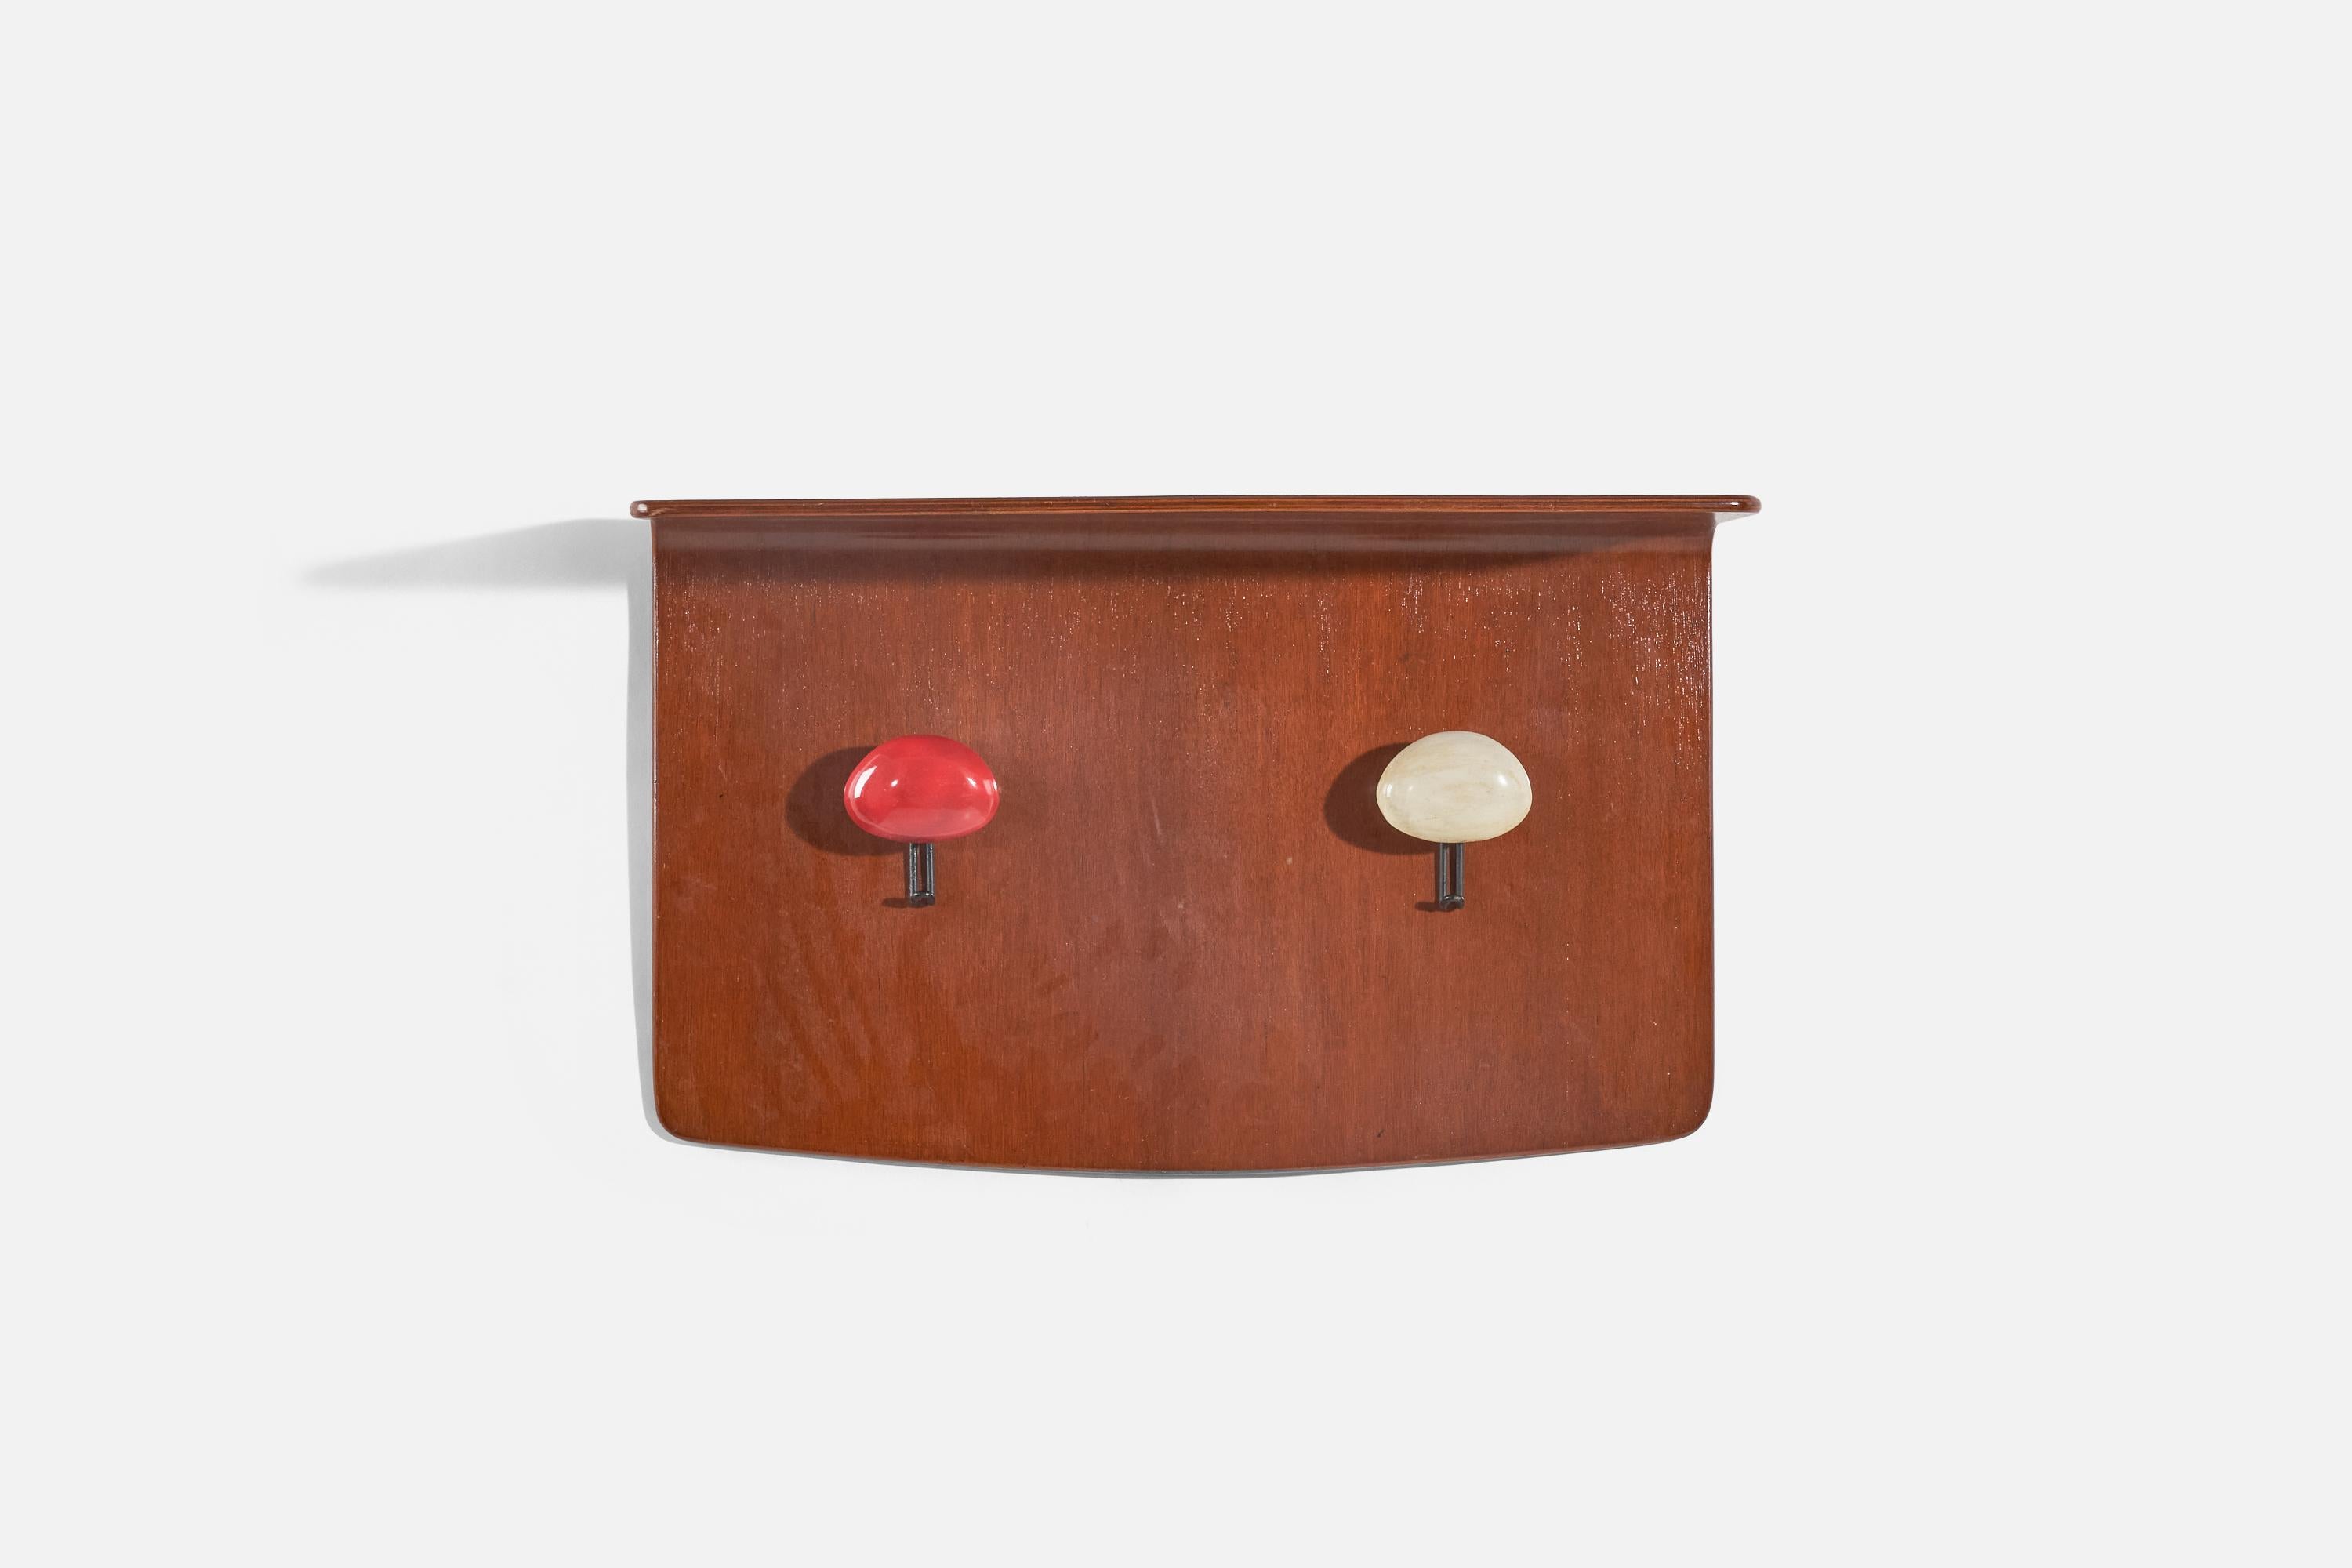 Porte-manteau avec étagère supérieure conçu par Franco Campo et Carlo Graffi et produit par Home, Italie, années 1950. En contreplaqué, en métal laqué noir et en bois massif peint en rouge et blanc.
  